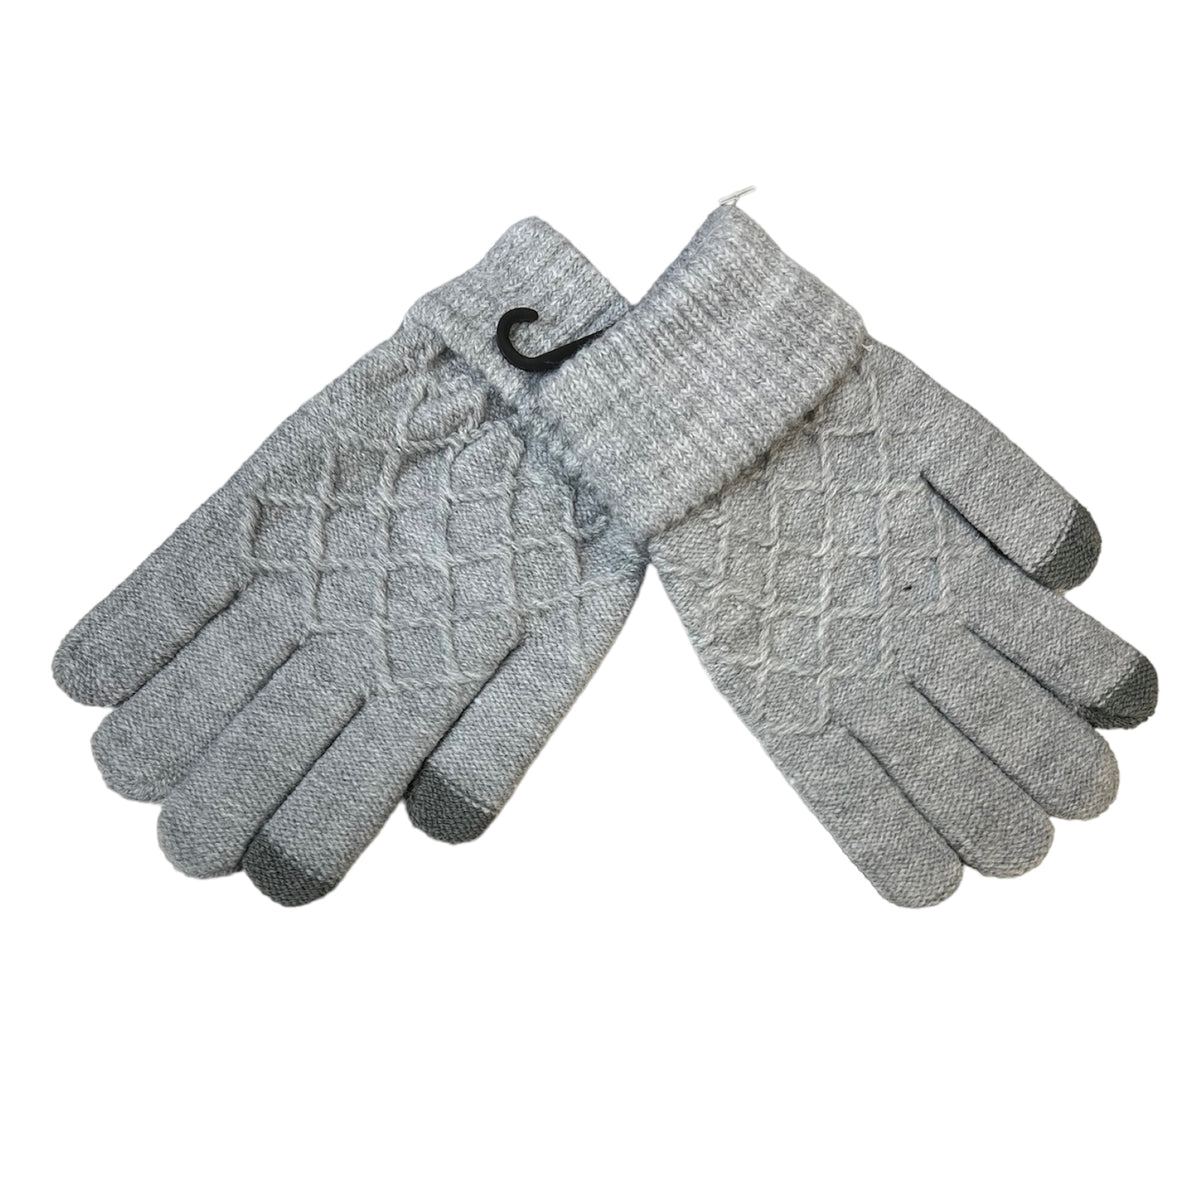 Les gants laine C'est Elle en laine douce sont à la fois luxueux et confortables. De couleur gris profond, elles offrent du style et de la sophistication. Ces gants femme sont à la fois chauds et respirants, parfaits pour la neige et le froid. Ils sont indispensables pour les tenues d'hiver!